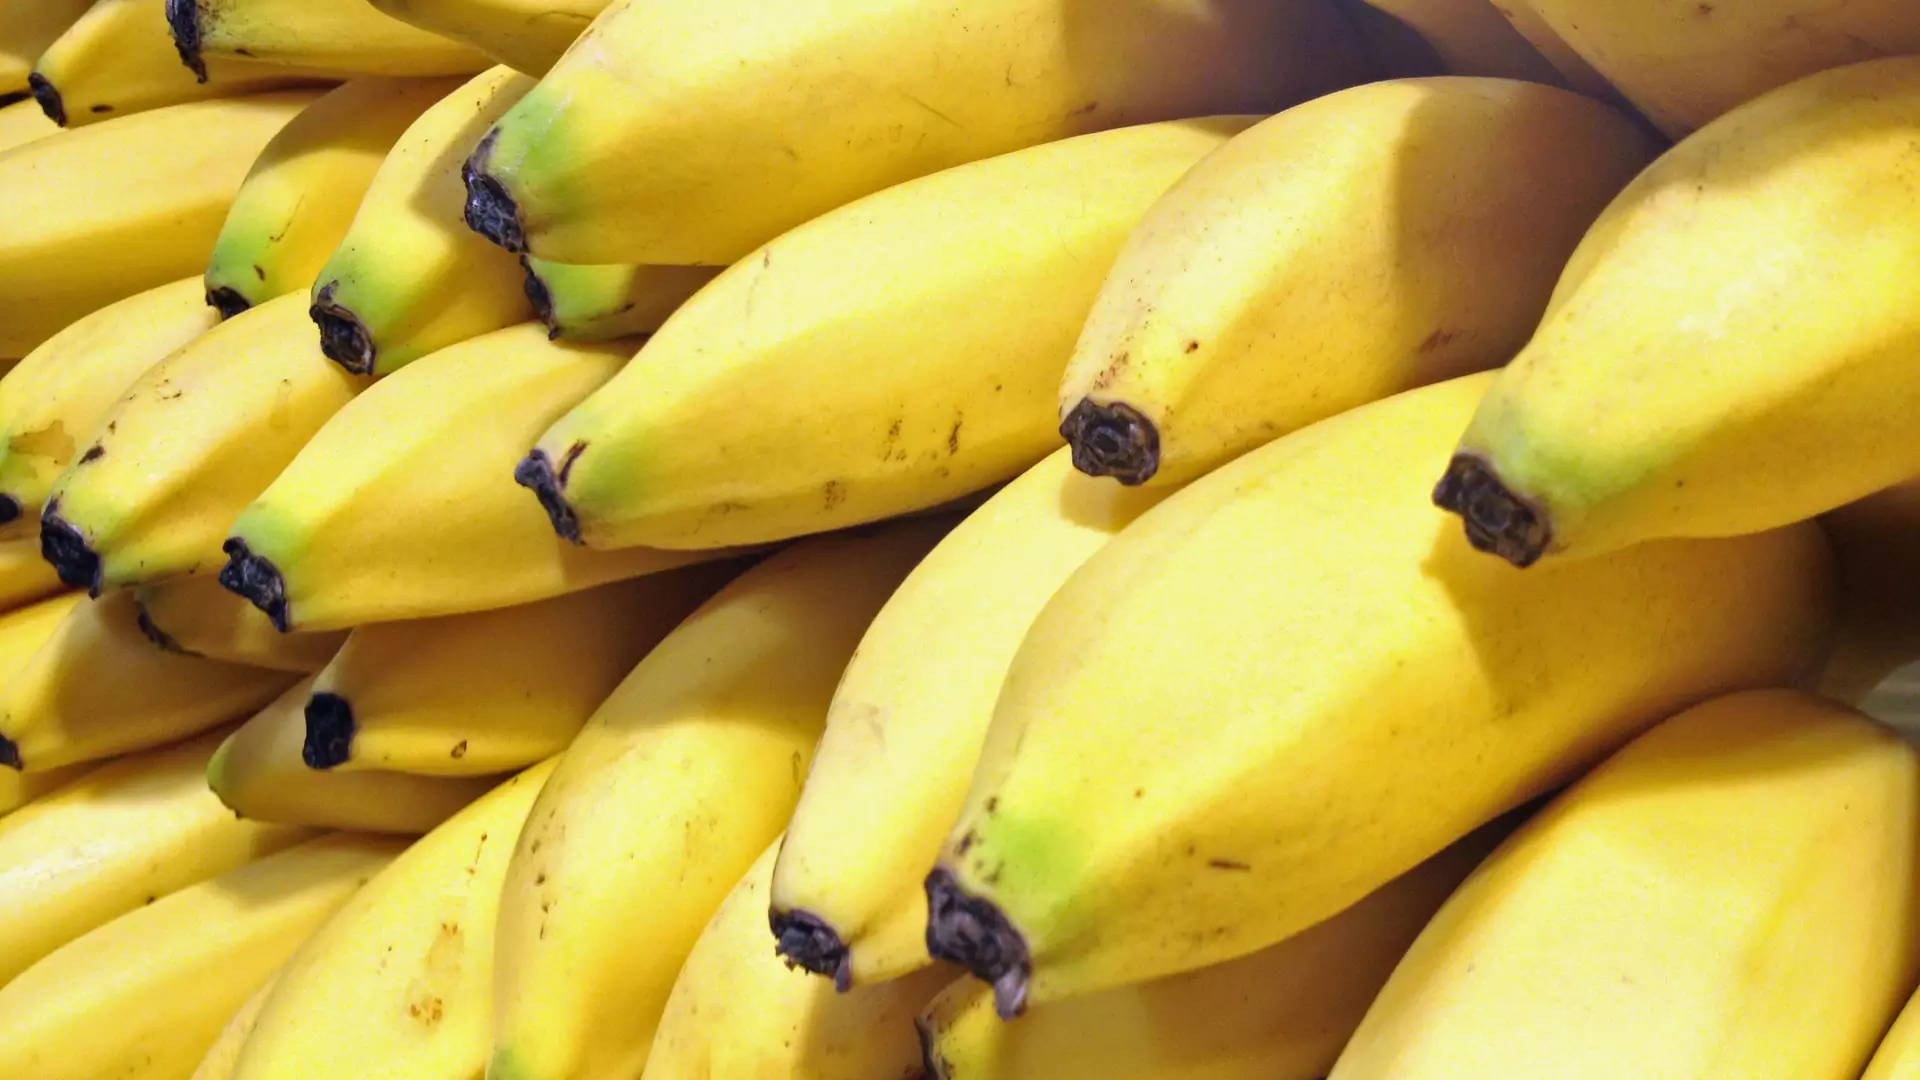 Po obejrzeniu tego wideo nie będziecie już chcieli jeść bananów